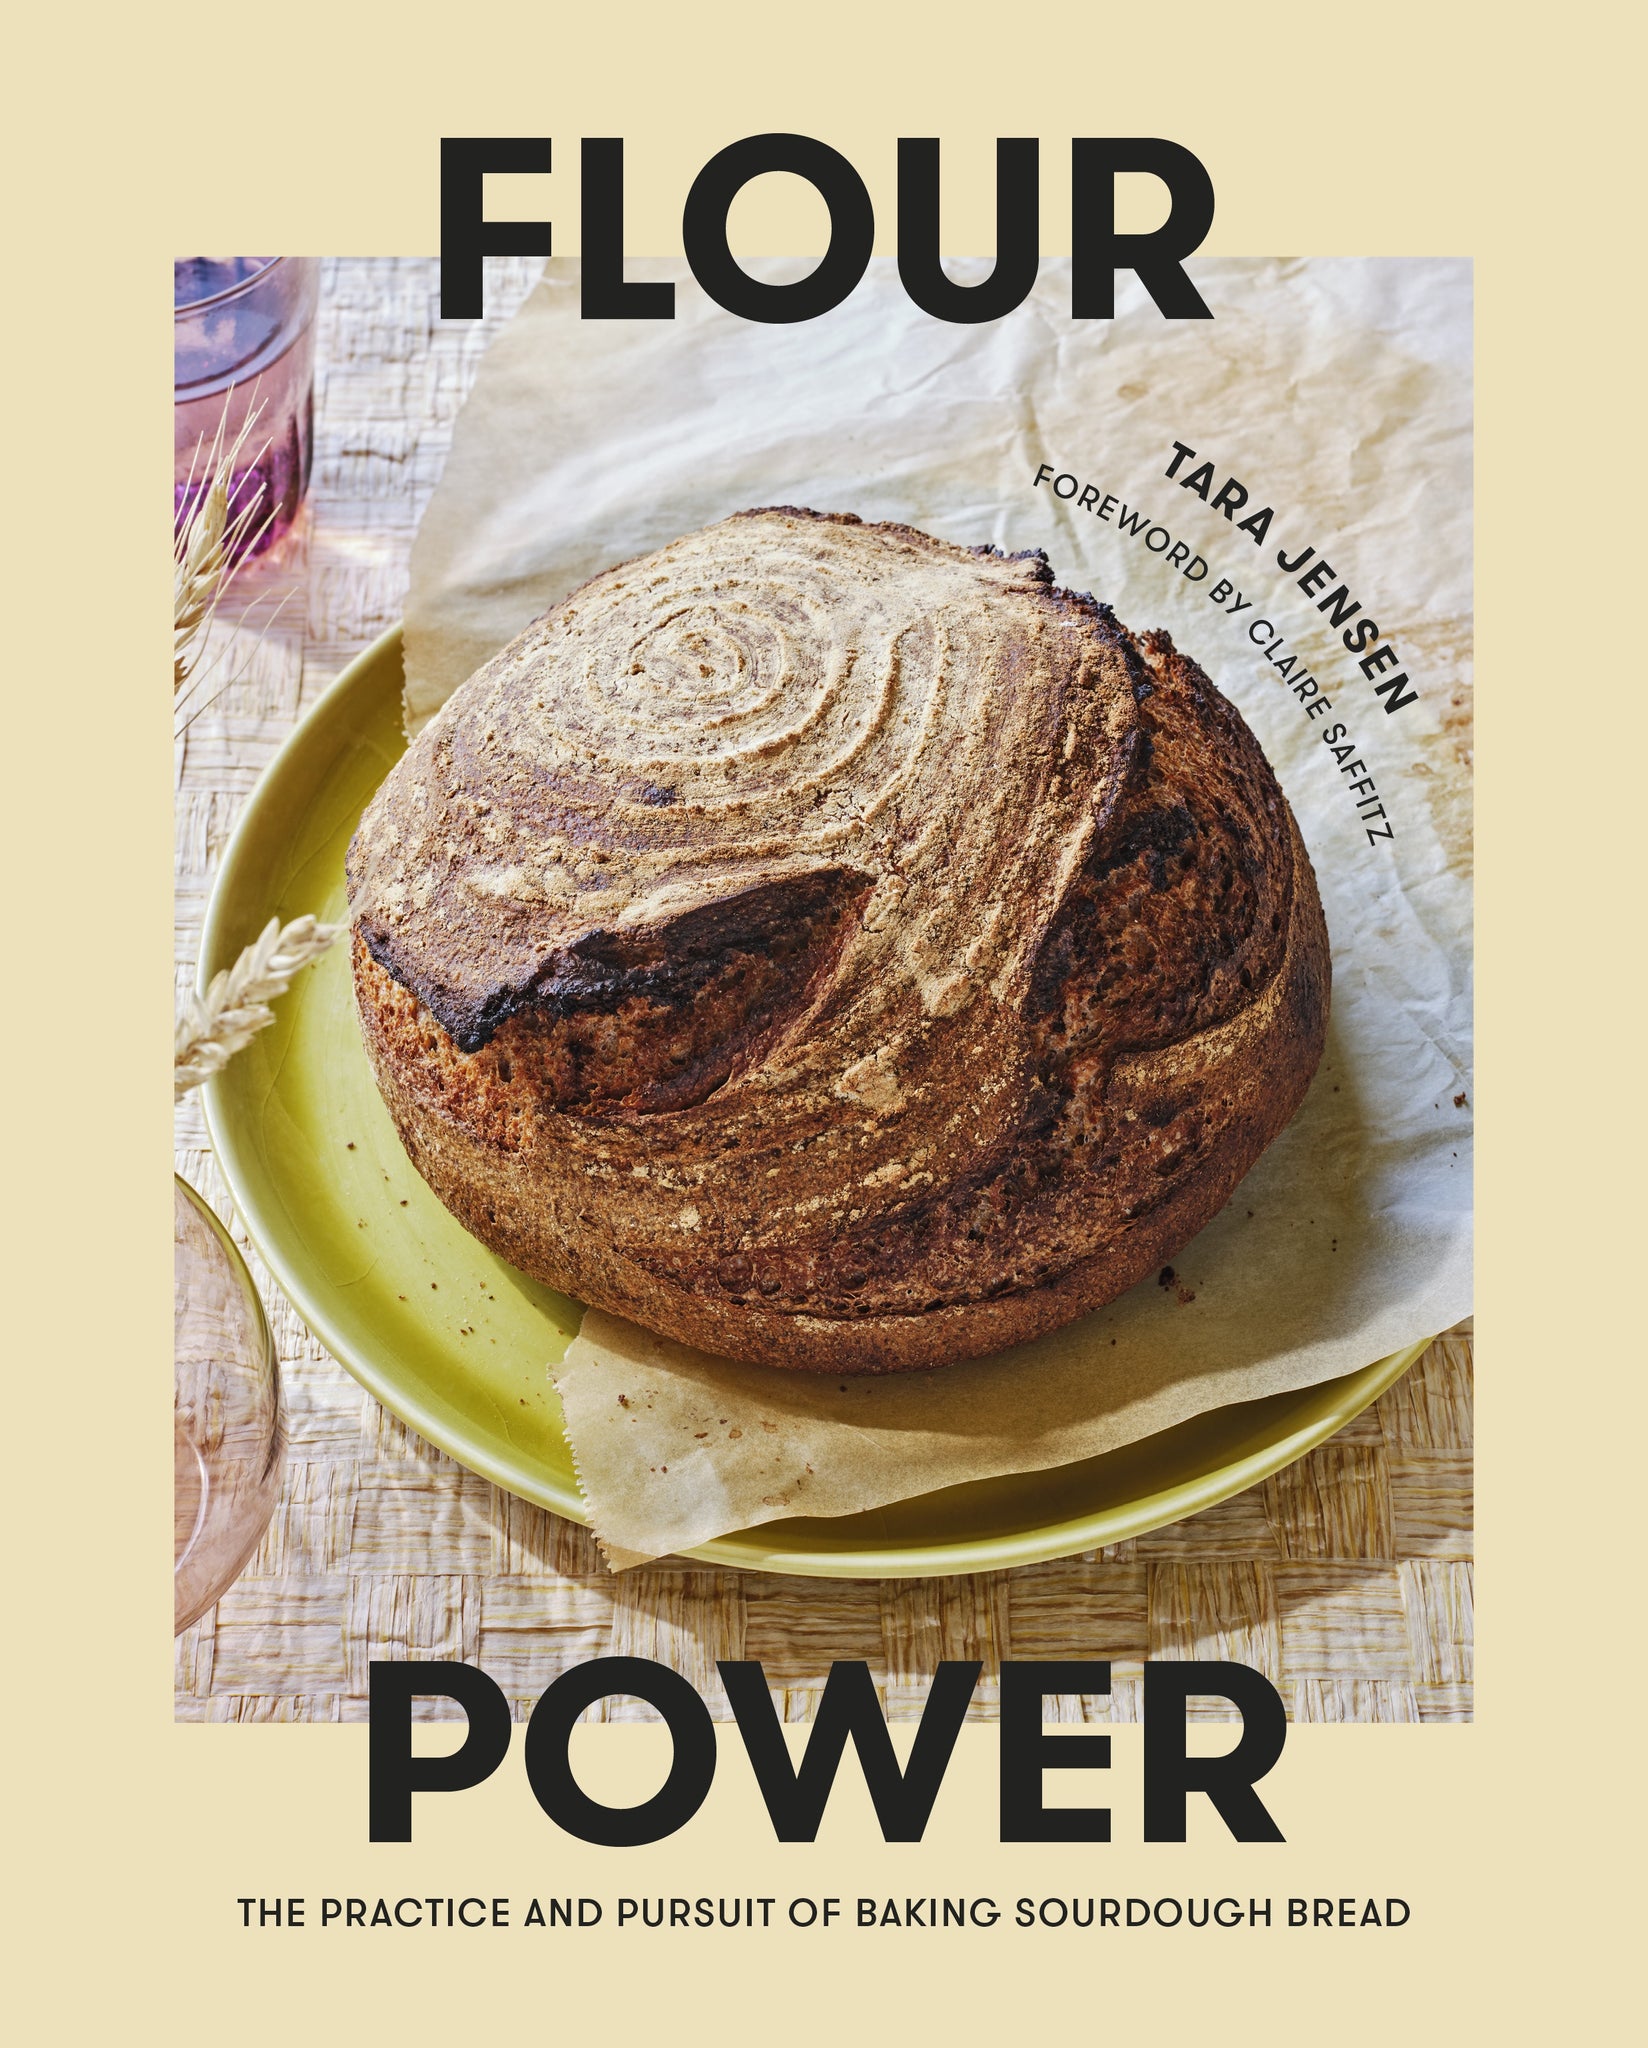 flour power: the practice and pursuit of baking sourdough bread